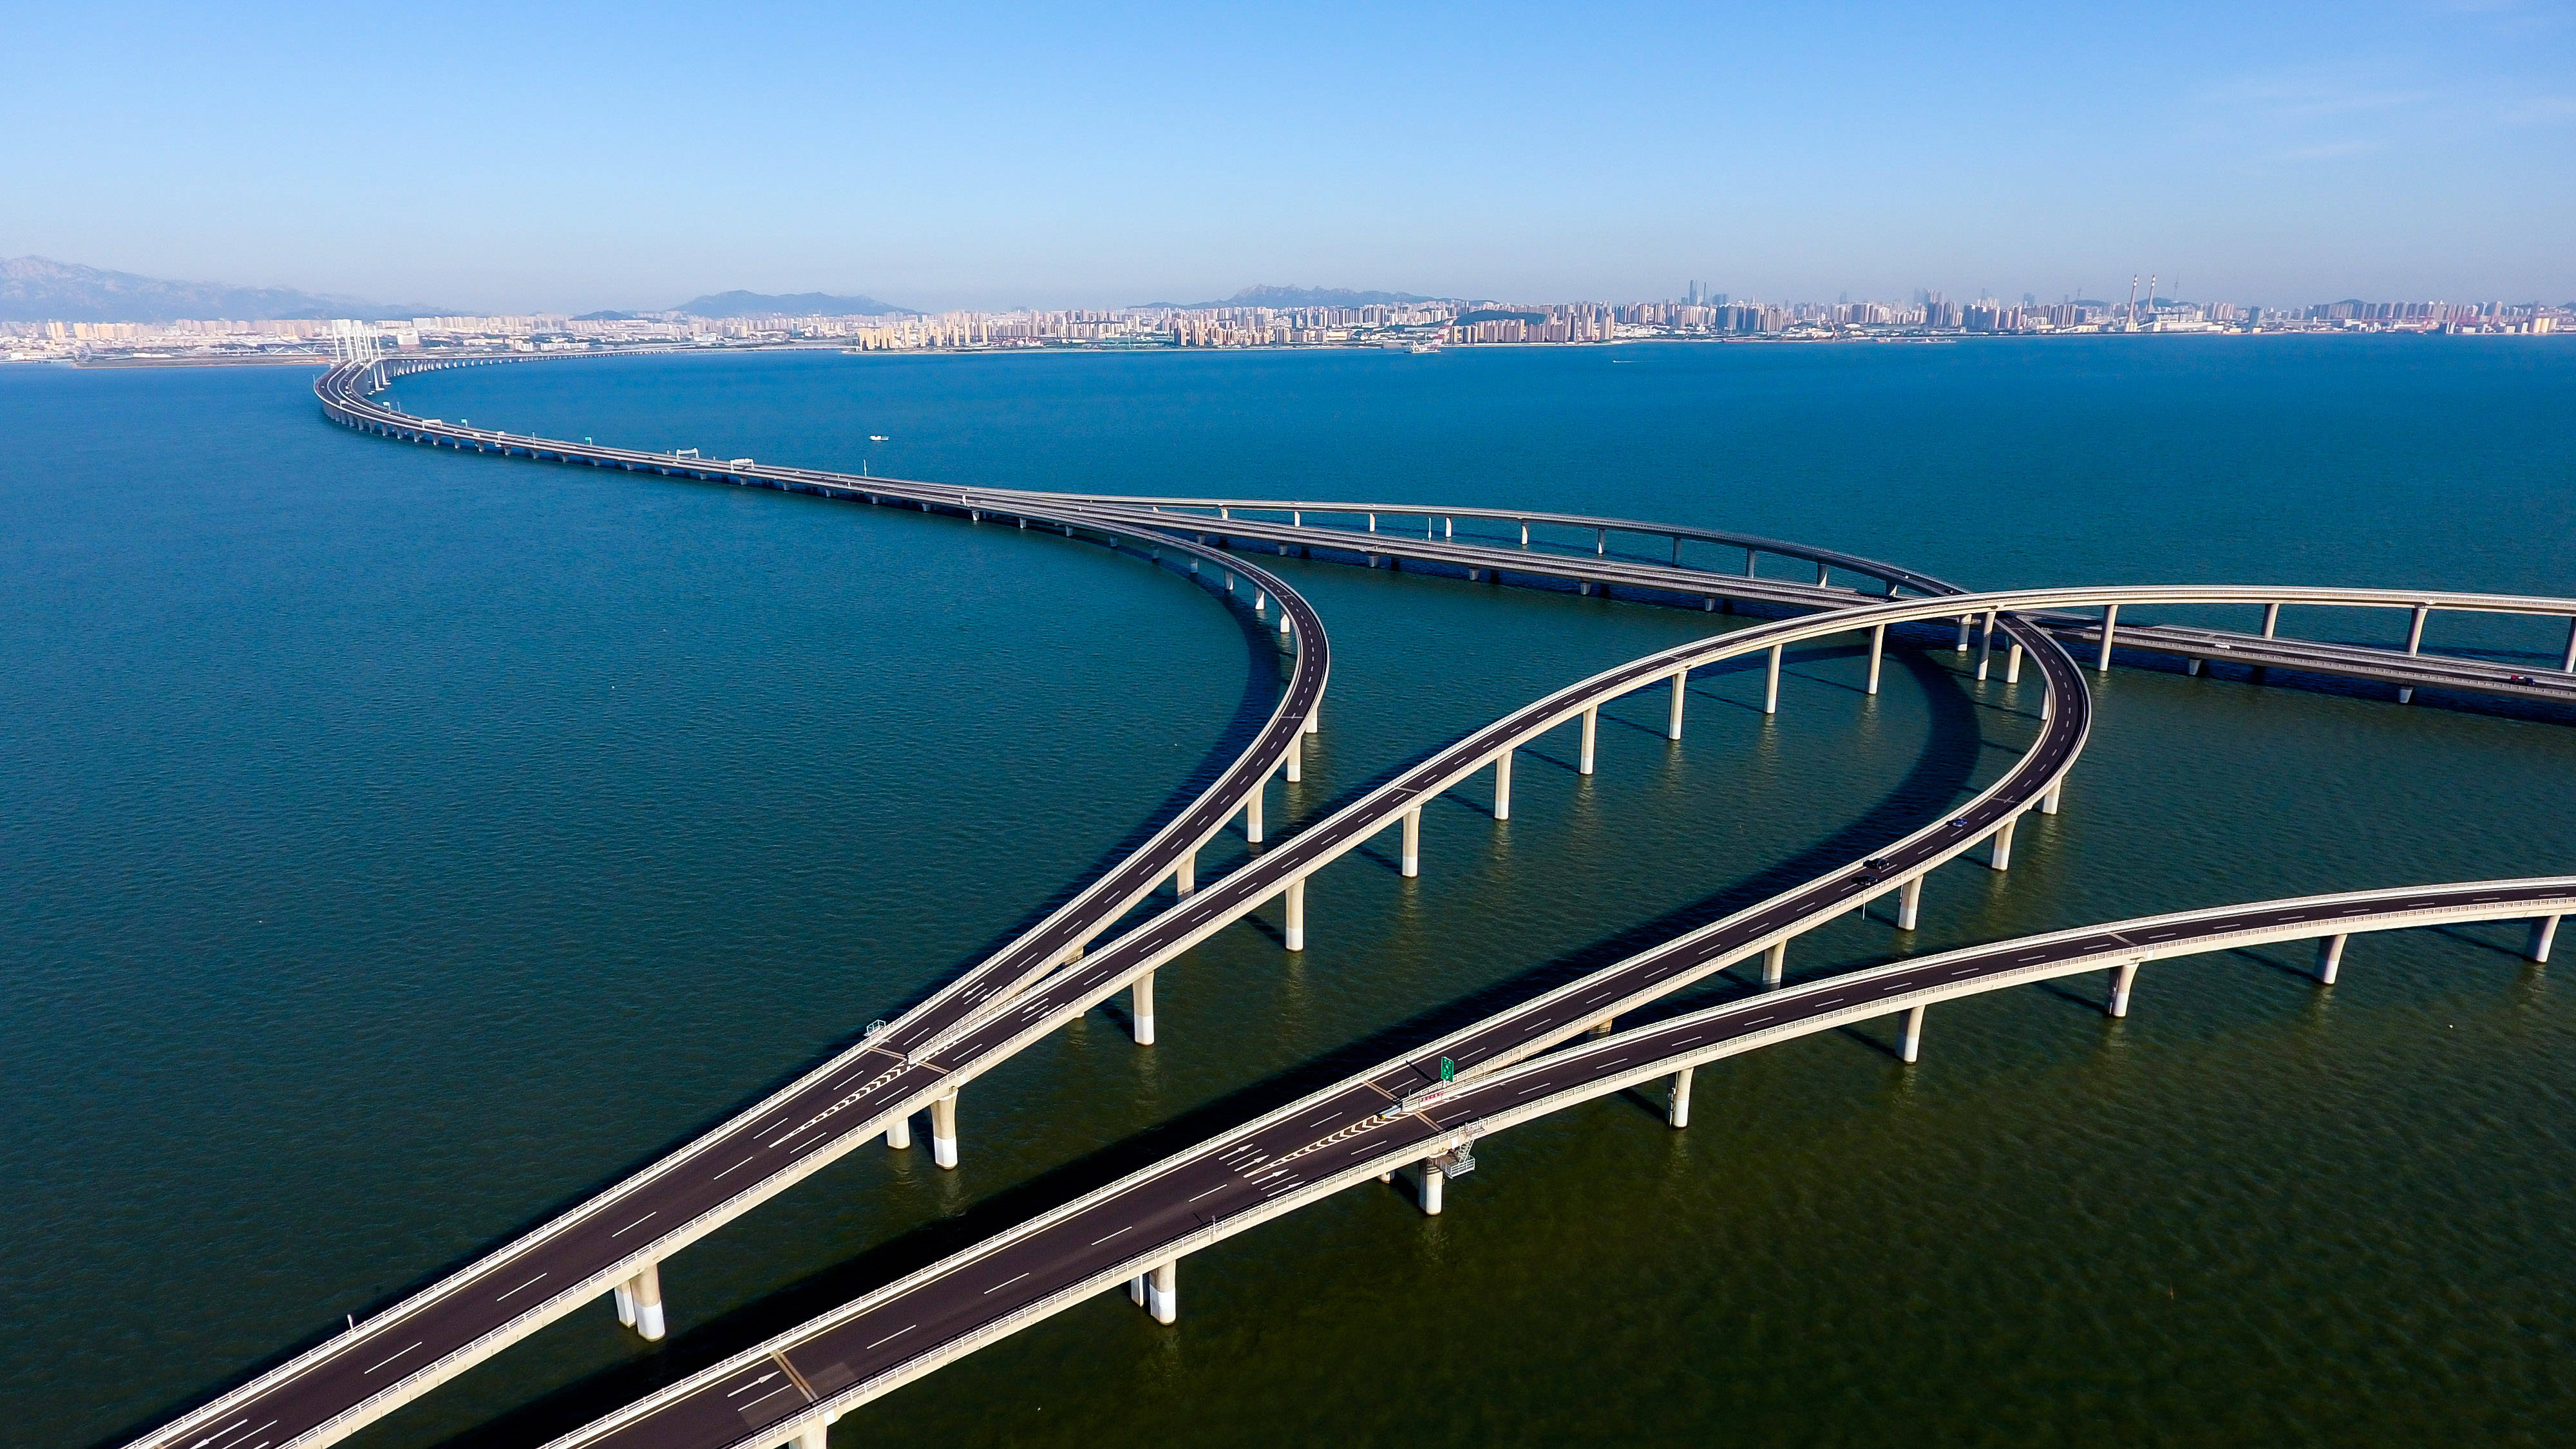 山东潍坊路桥工程中的潍坊潘通能技术:为工程质量保驾护航